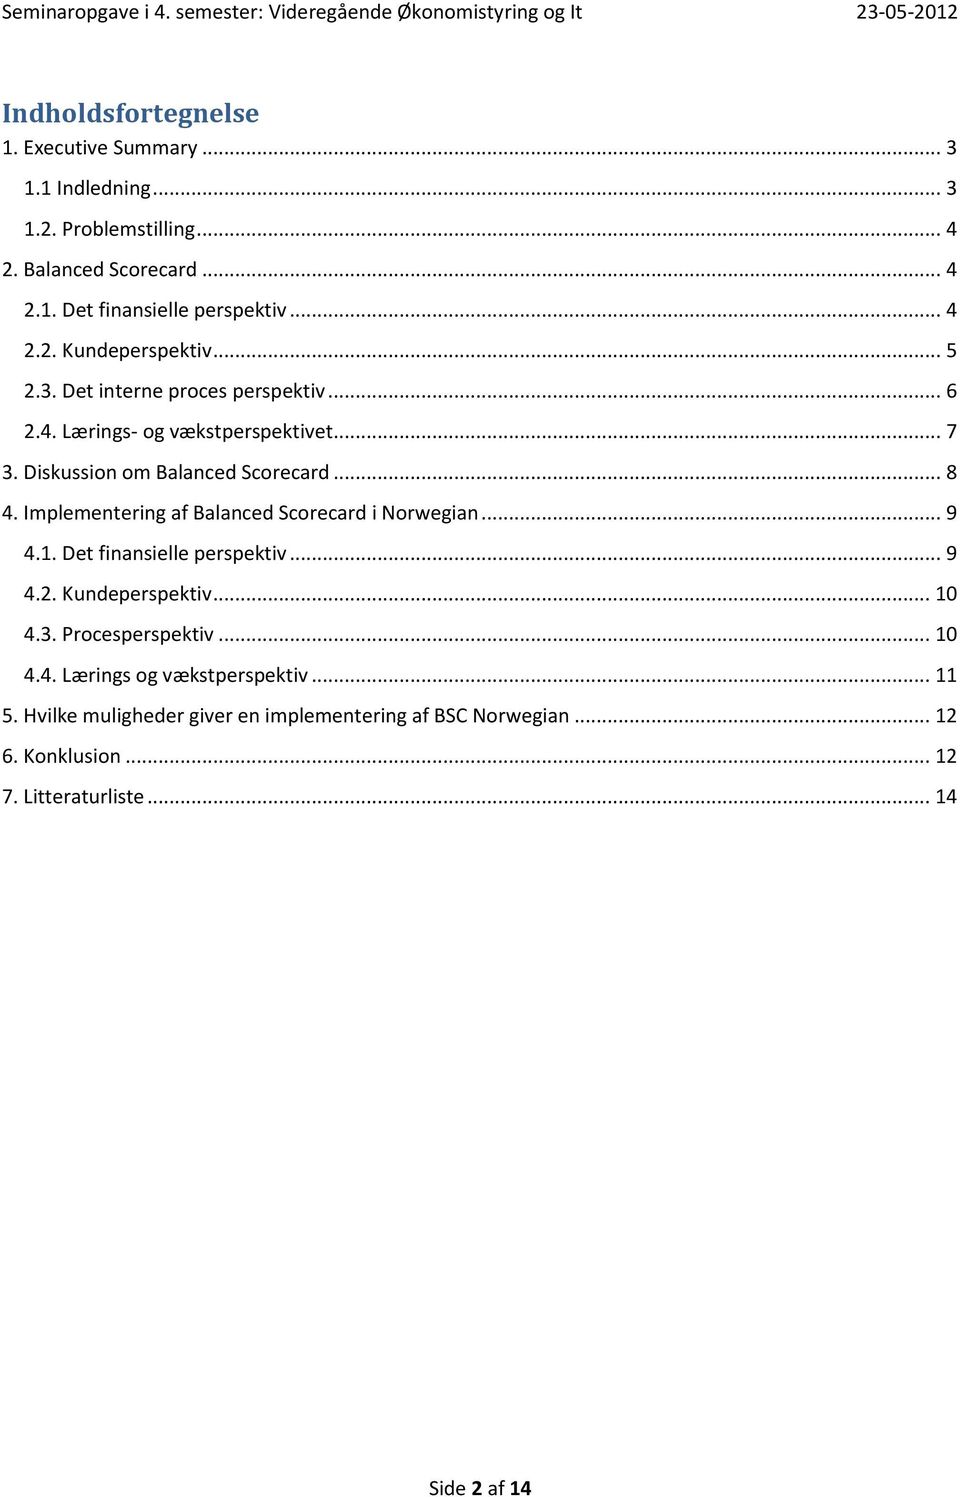 Implementering af Balanced Scorecard i Norwegian... 9 4.1. Det finansielle perspektiv... 9 4.2. Kundeperspektiv... 10 4.3. Procesperspektiv... 10 4.4. Lærings og vækstperspektiv.